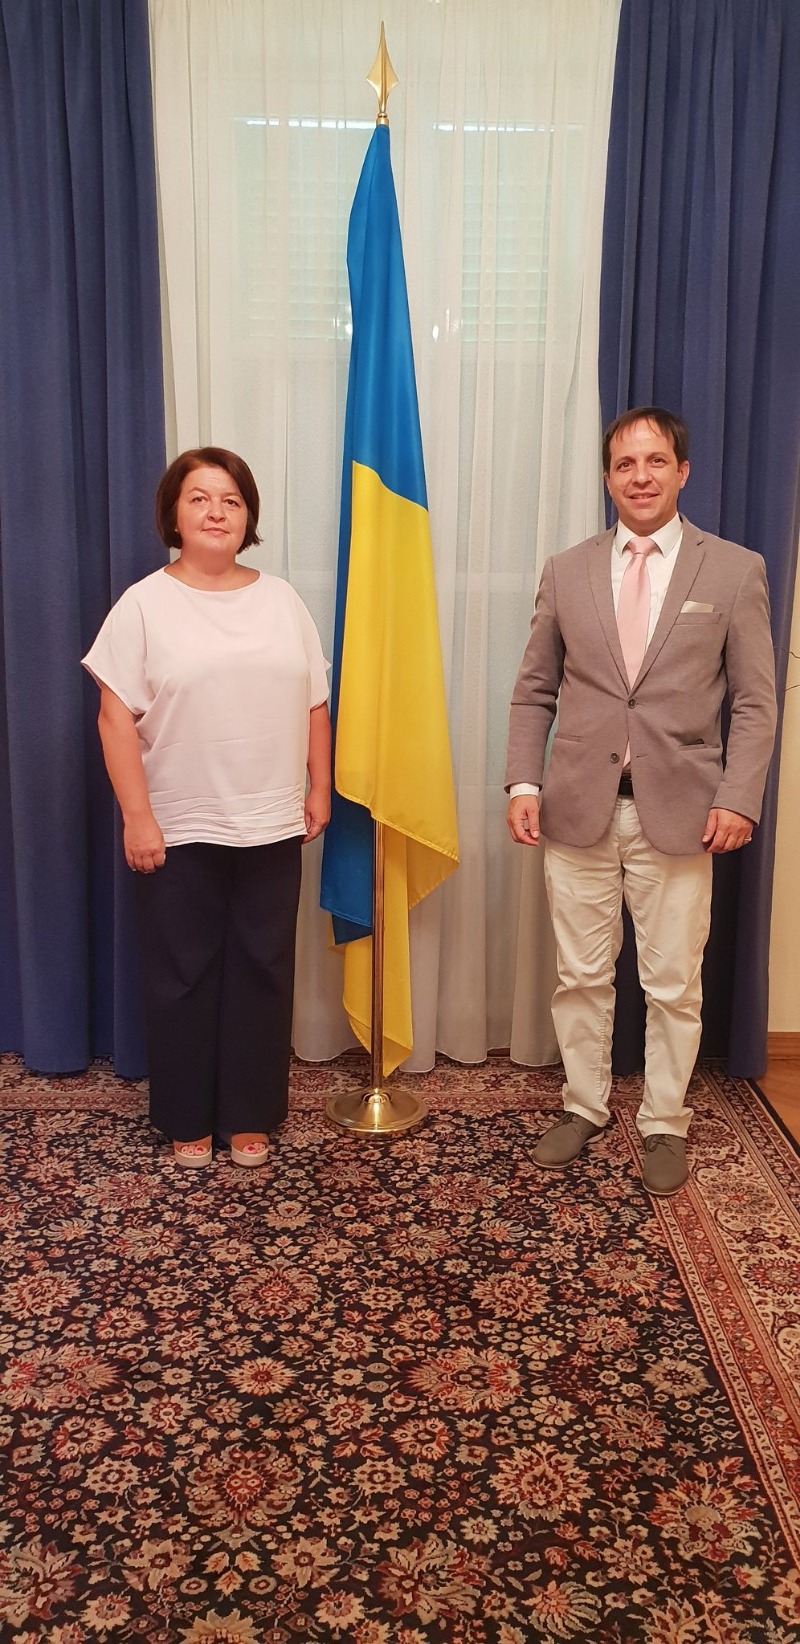 السفير والمراقب الدائم لجامعة الامم المتحدة للسلام د. ديفيد فرنانديز بويانا التقى سفيرة أوكرانيا لدى الامم المتحدة في جنيف